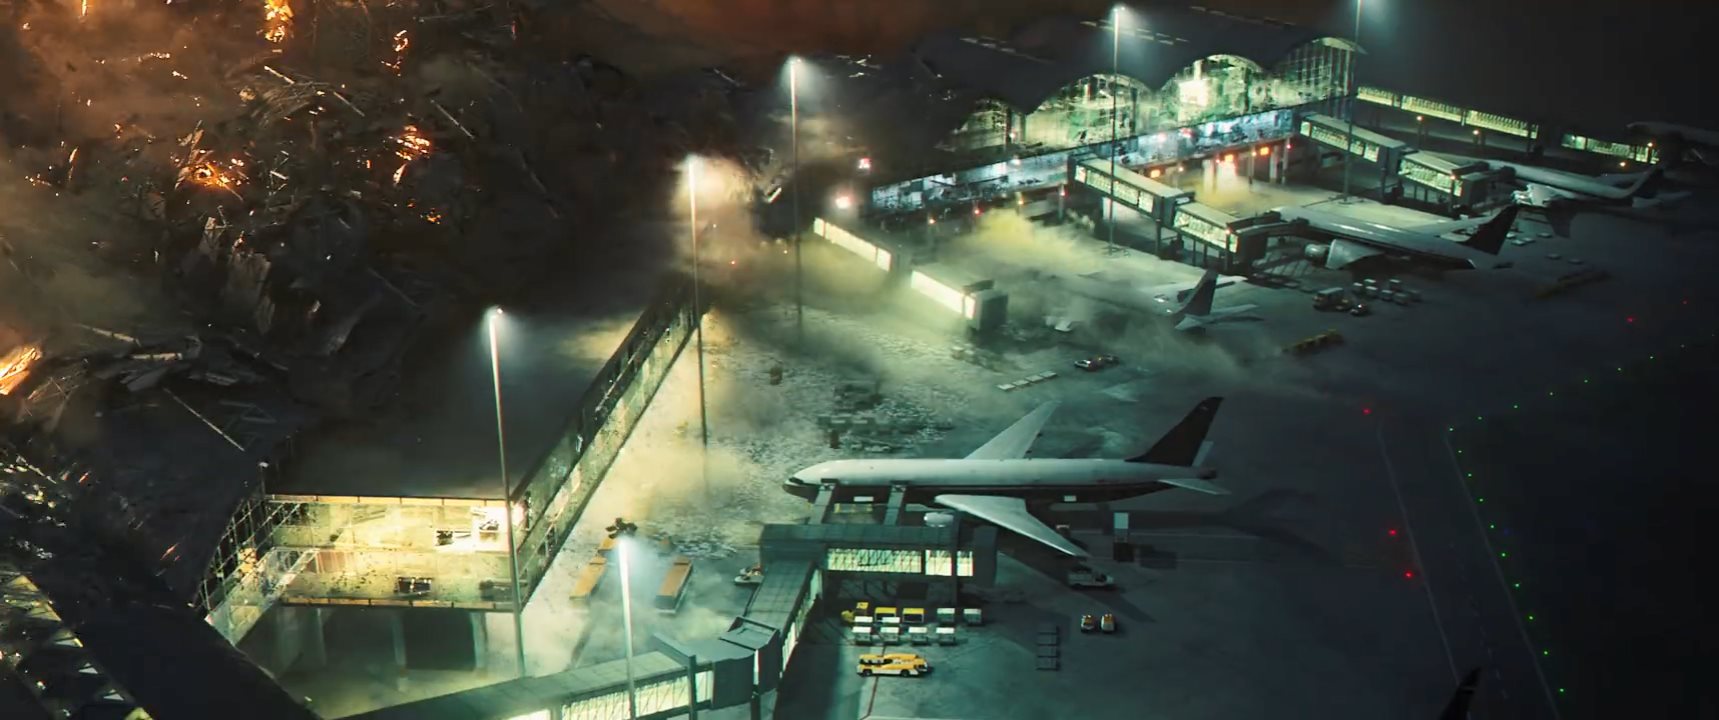 刘德华主演《拆弹专家2》发布先导预告 2020年7月上映